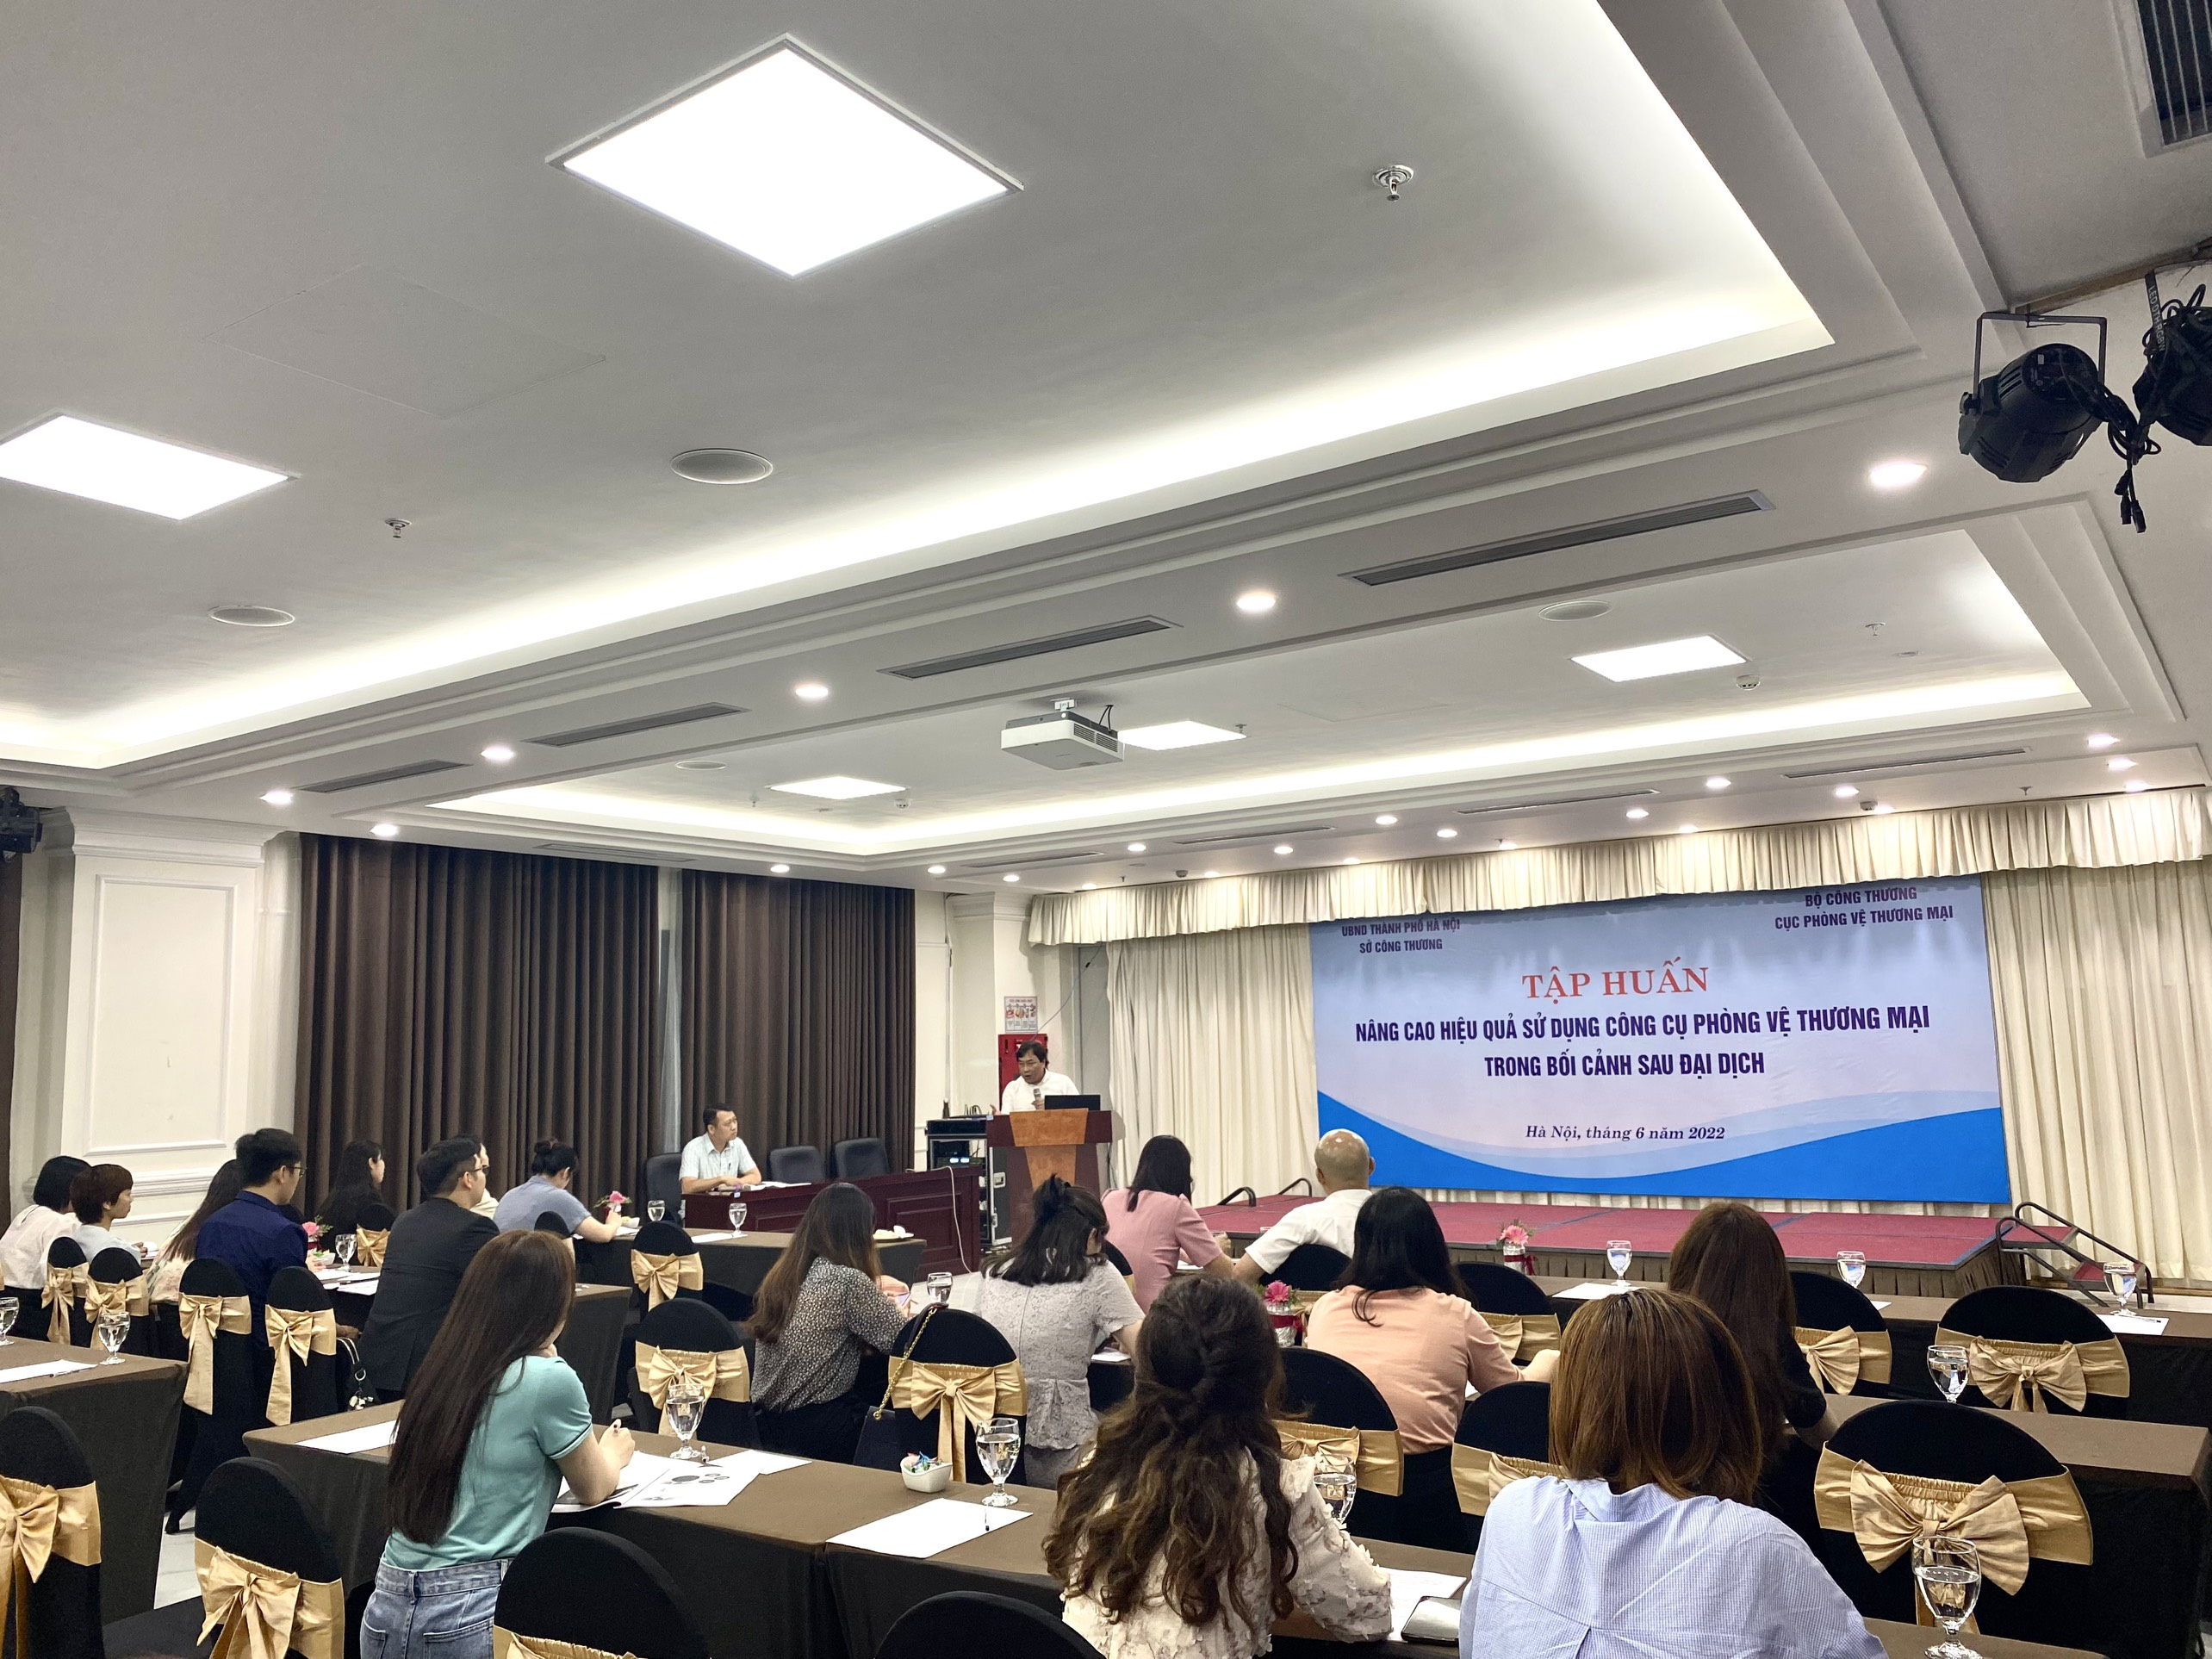 Cục Phòng vệ thương mại tổ chức Hội nghị tập huấn “Nâng cao hiệu quả sử dụng công cụ Phòng vệ thương mại trong bối cảnh sau đại dịch” tại Hà Nội